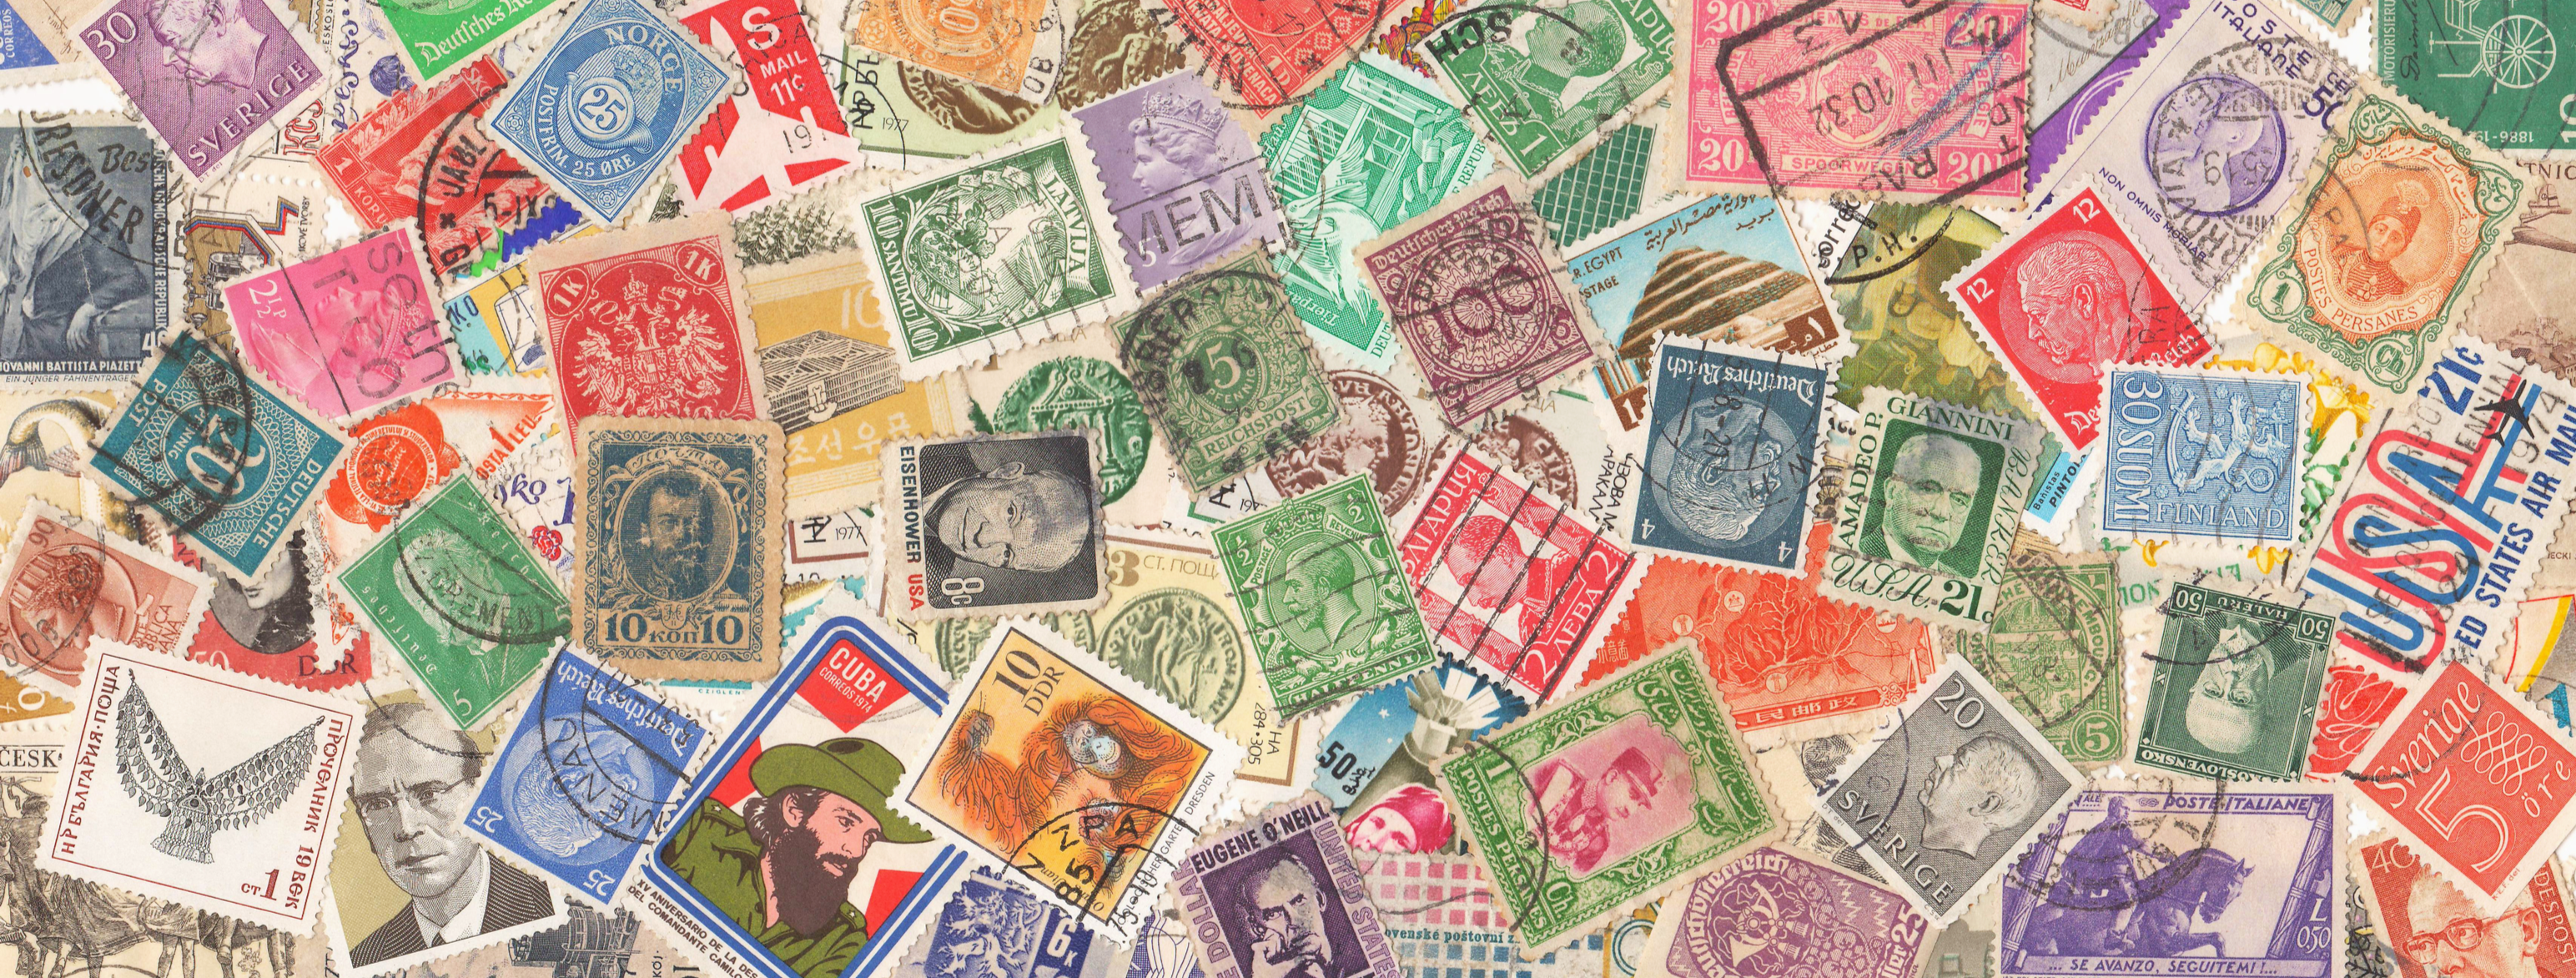 frimerker - Gjengitt med tillatelse